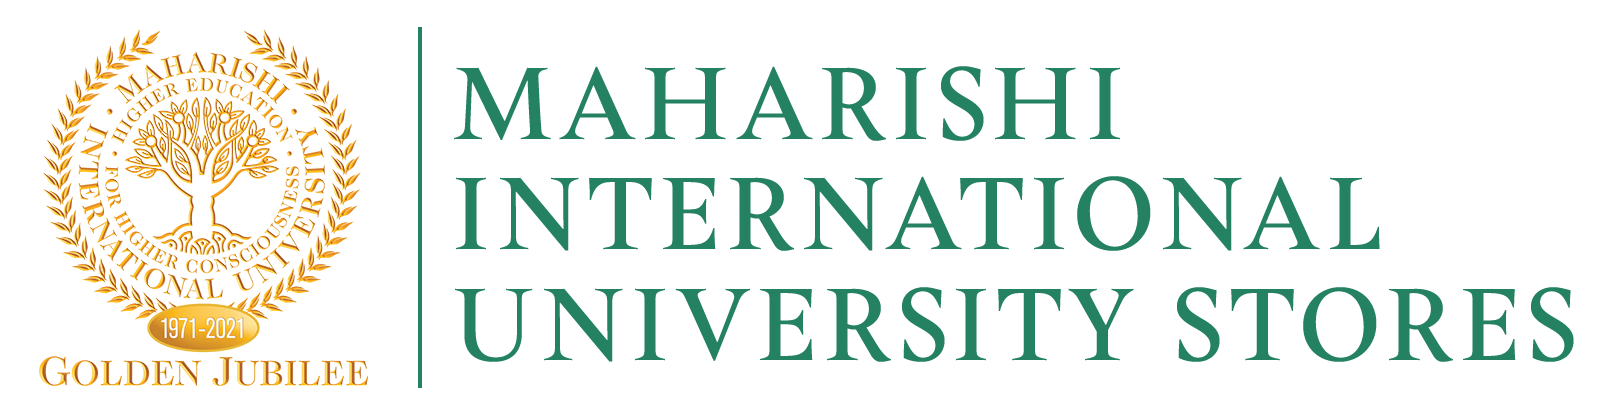 Maharishi International University Store